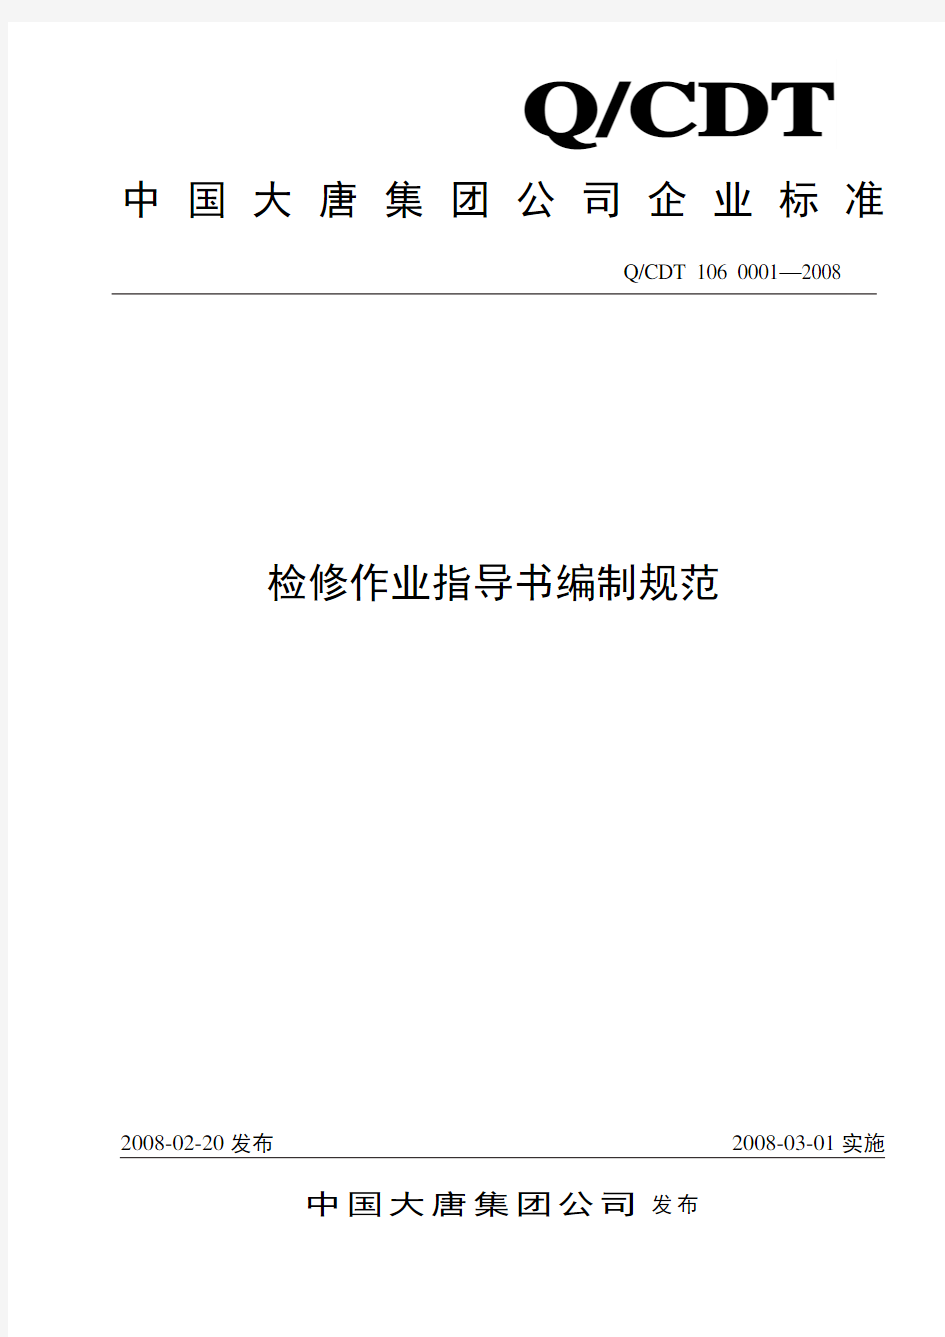 中国大唐集团公司检修作业指导书编制规范